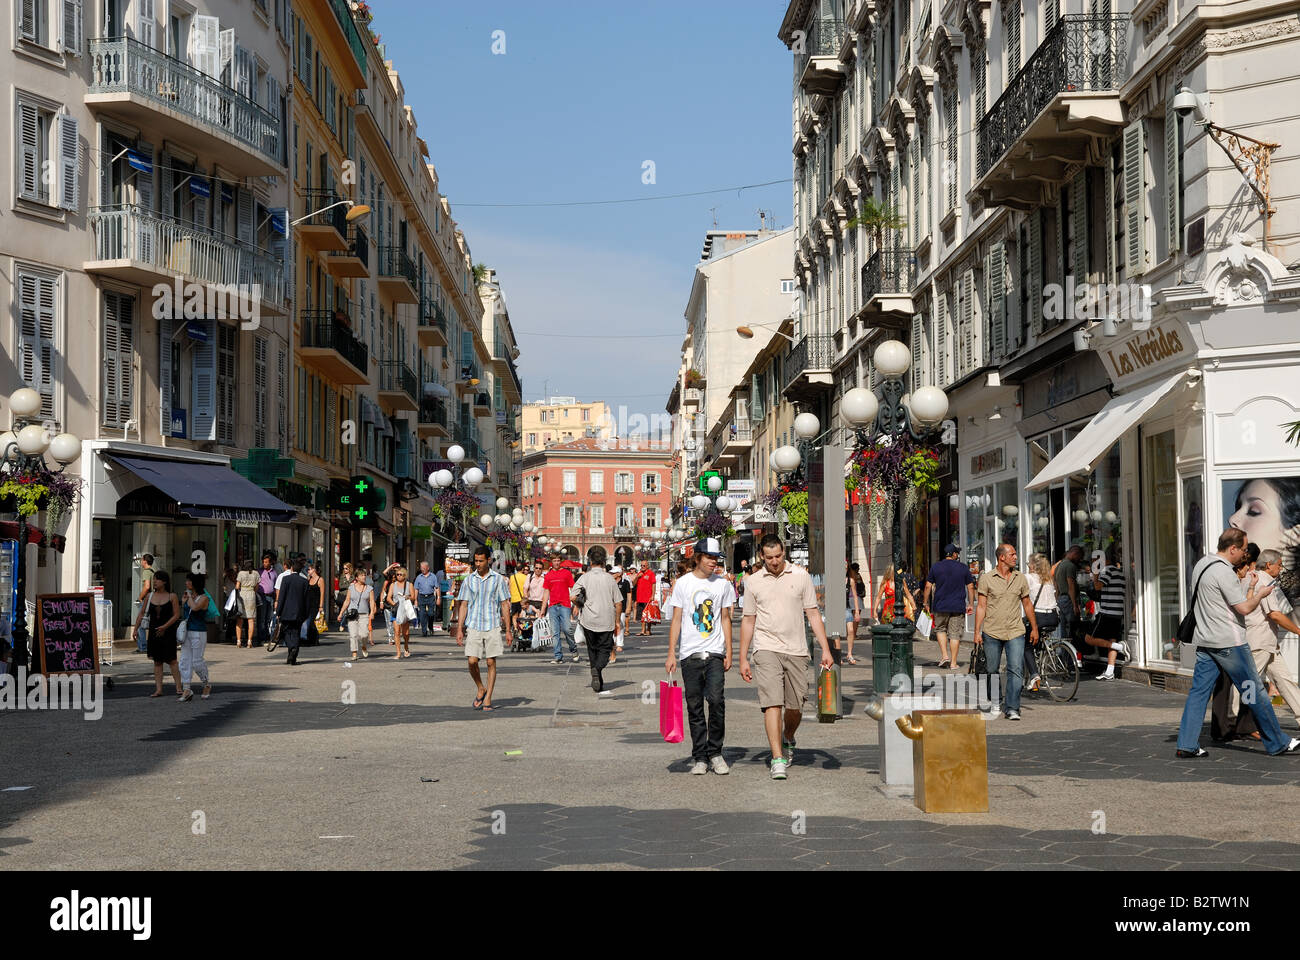 Street scene in Nice, France Stock Photo